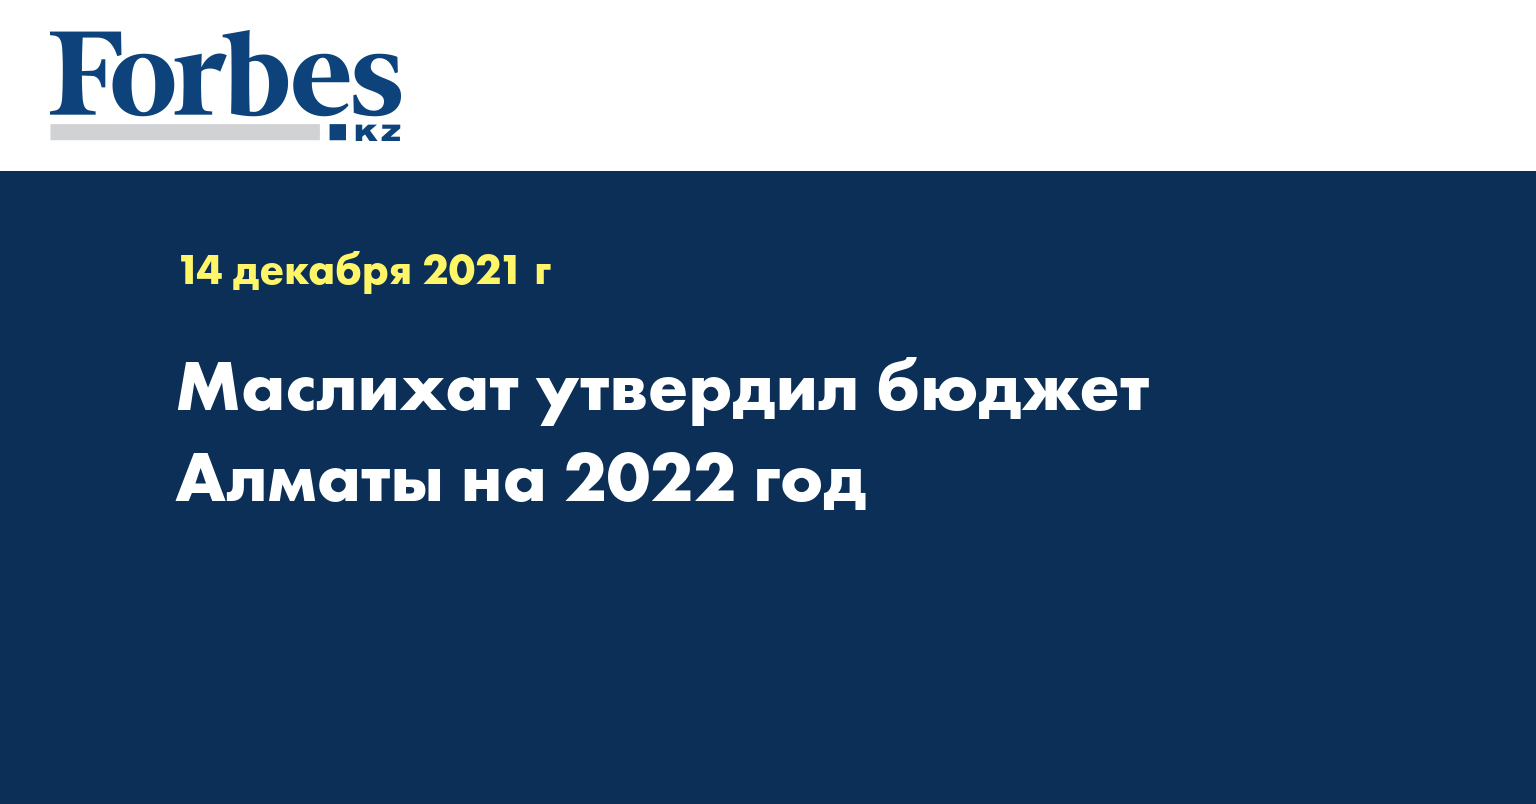 Маслихат утвердил бюджет Алматы на 2022 год